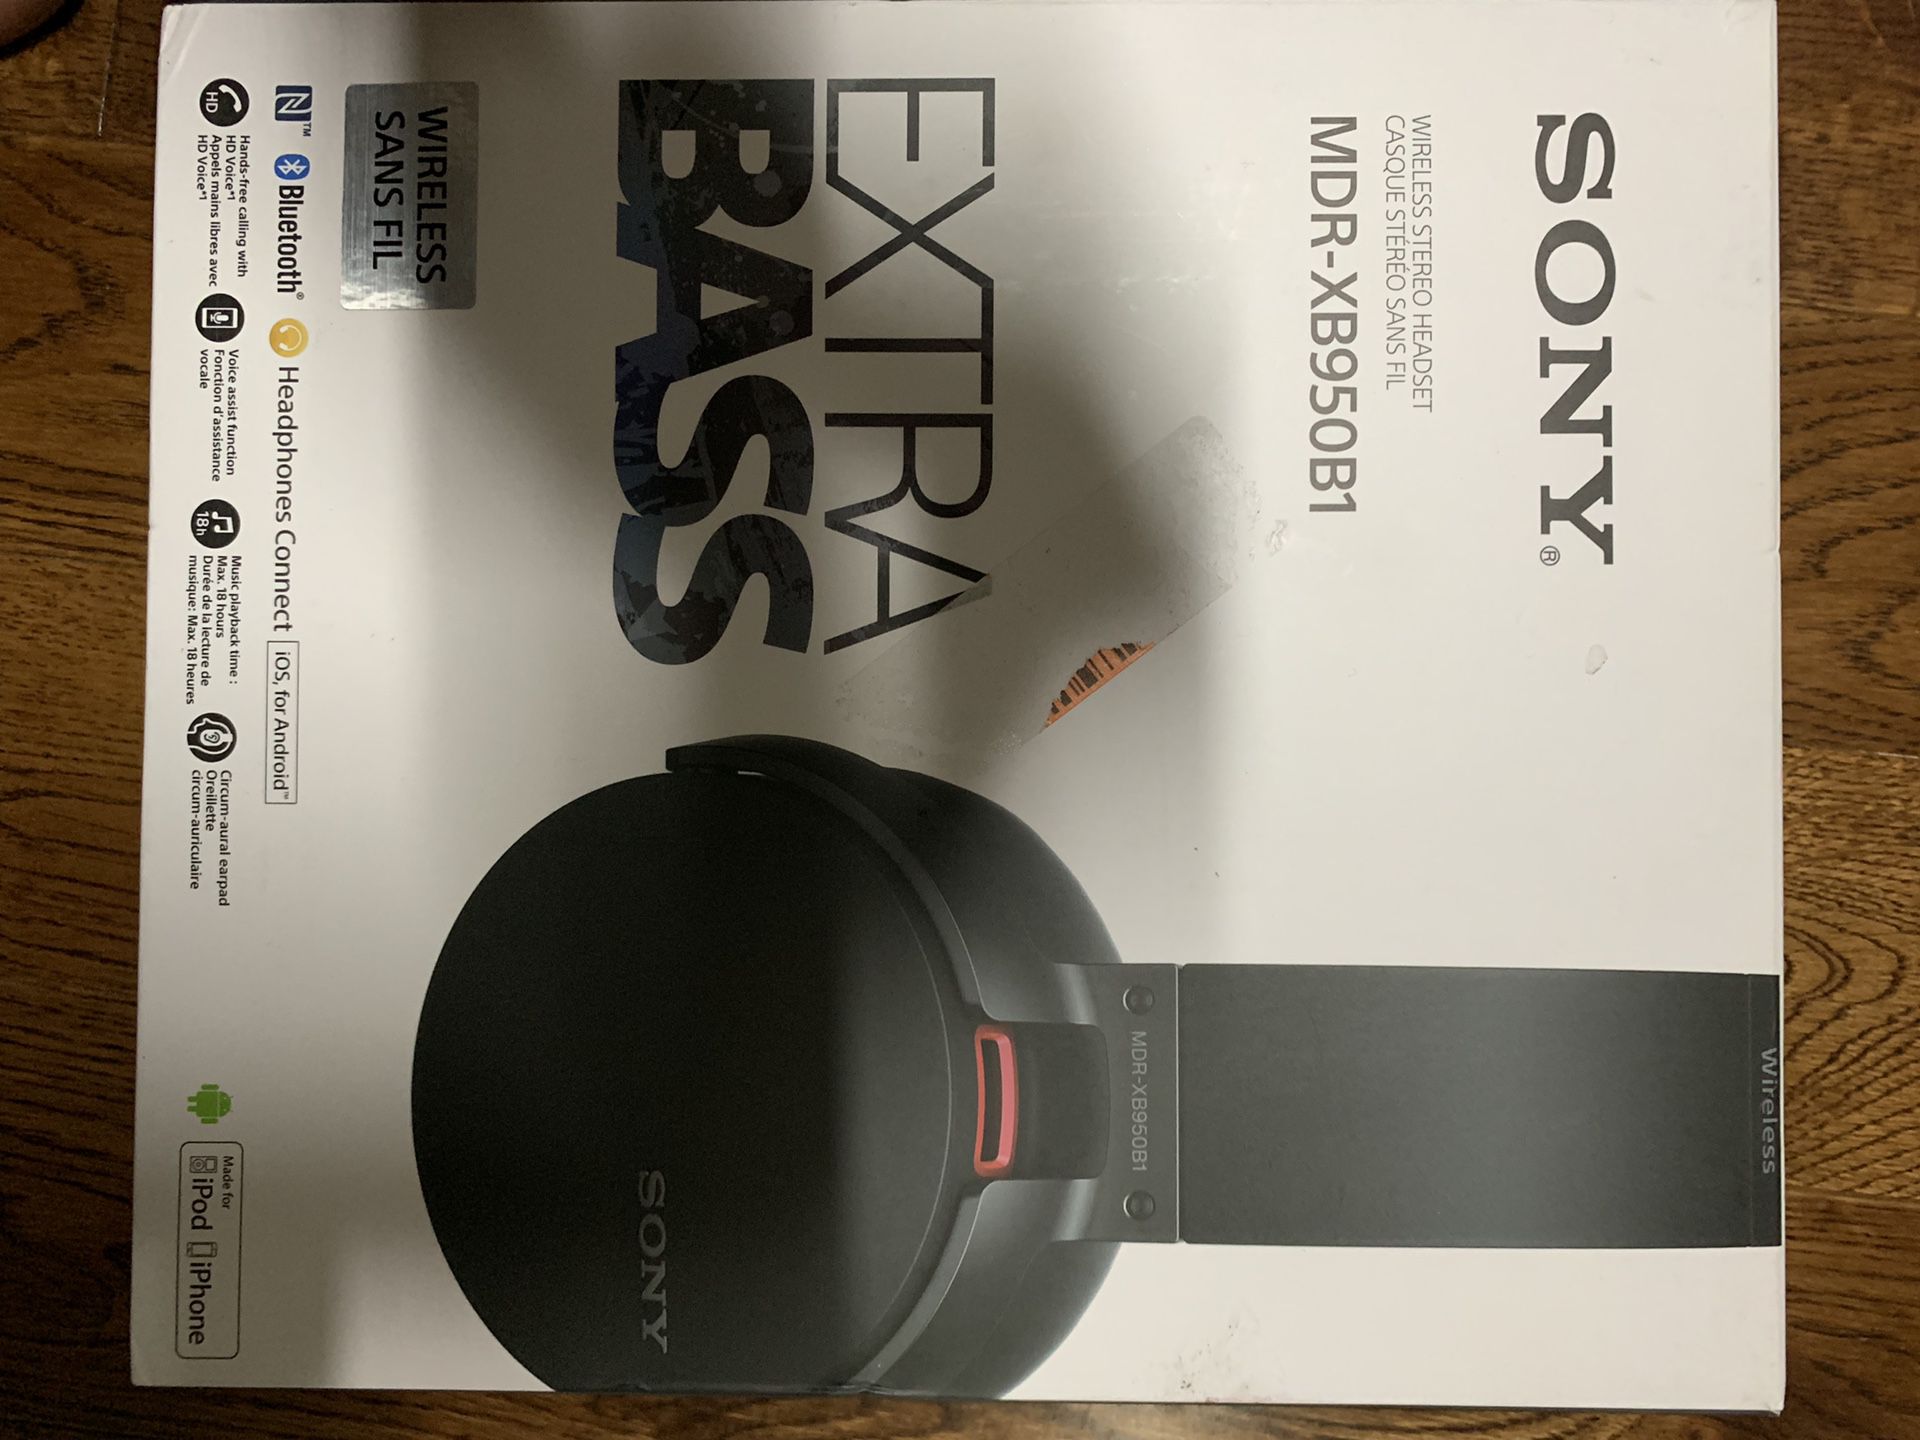 Sony MBR-XB950B1 wireless headphone